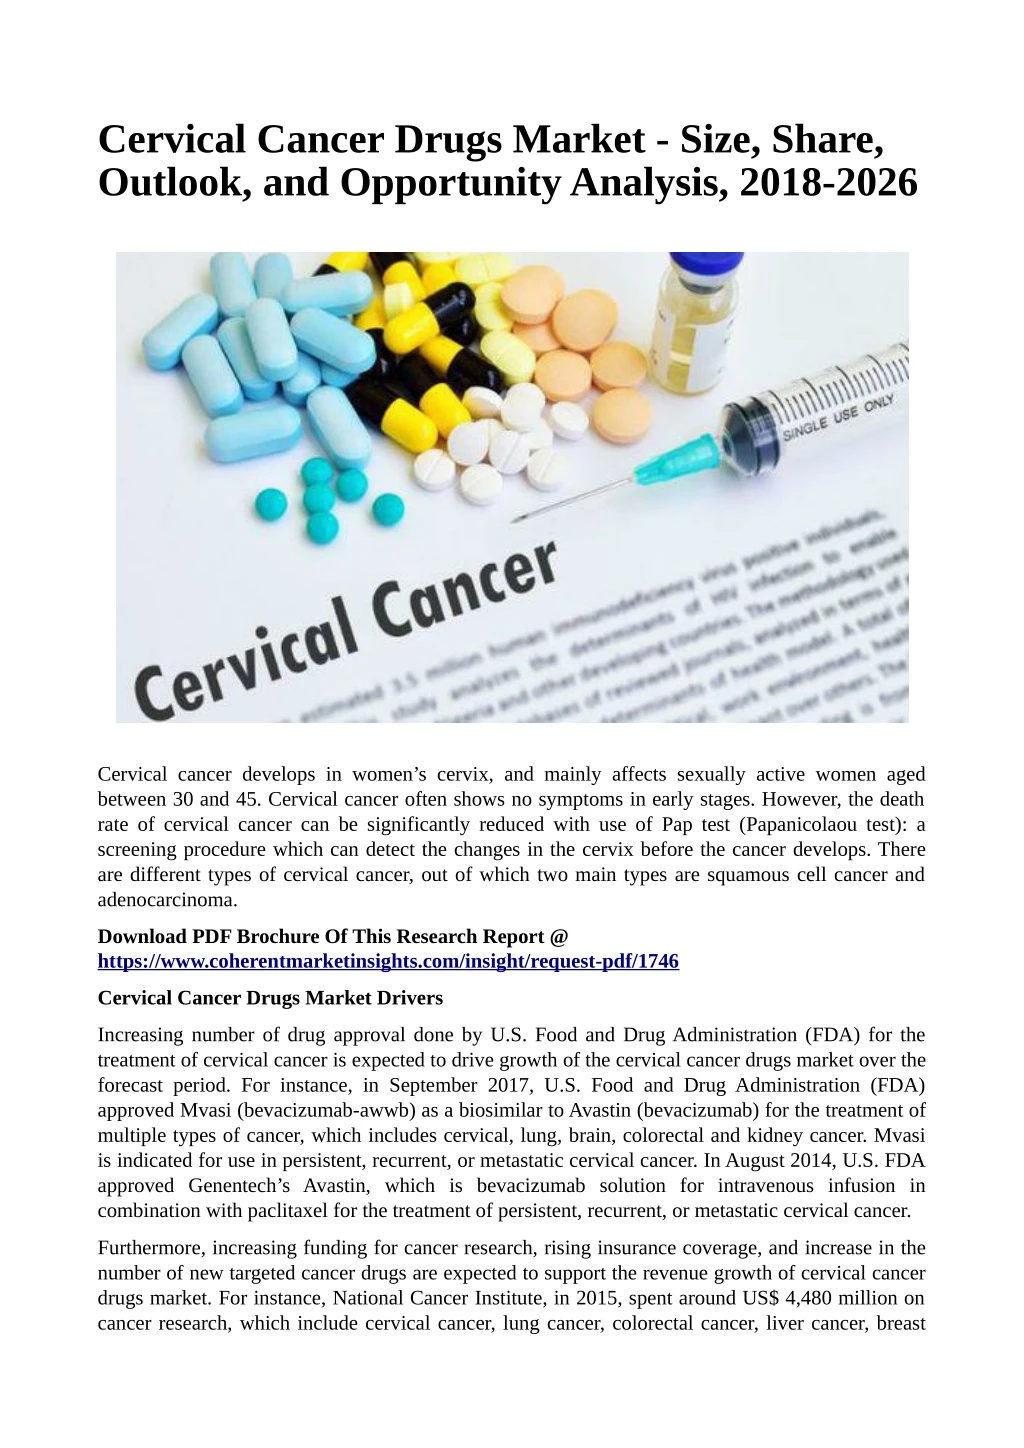 cervical cancer drugs market size share outlook